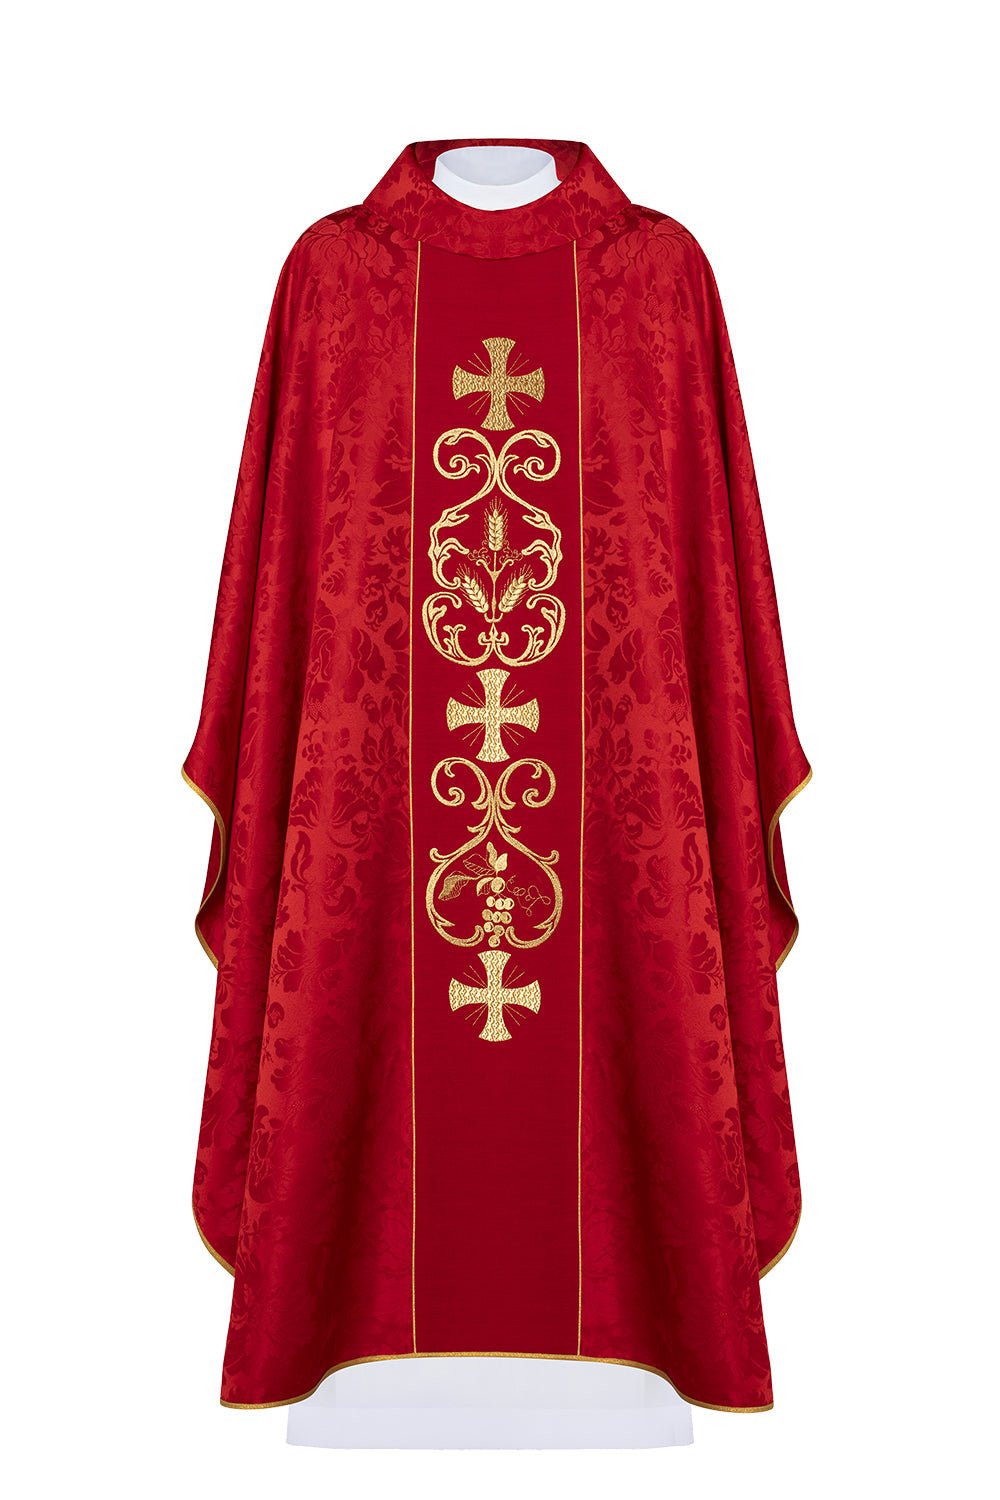 Czerwony ornat liturgiczny zdobiony haftowanym pasem